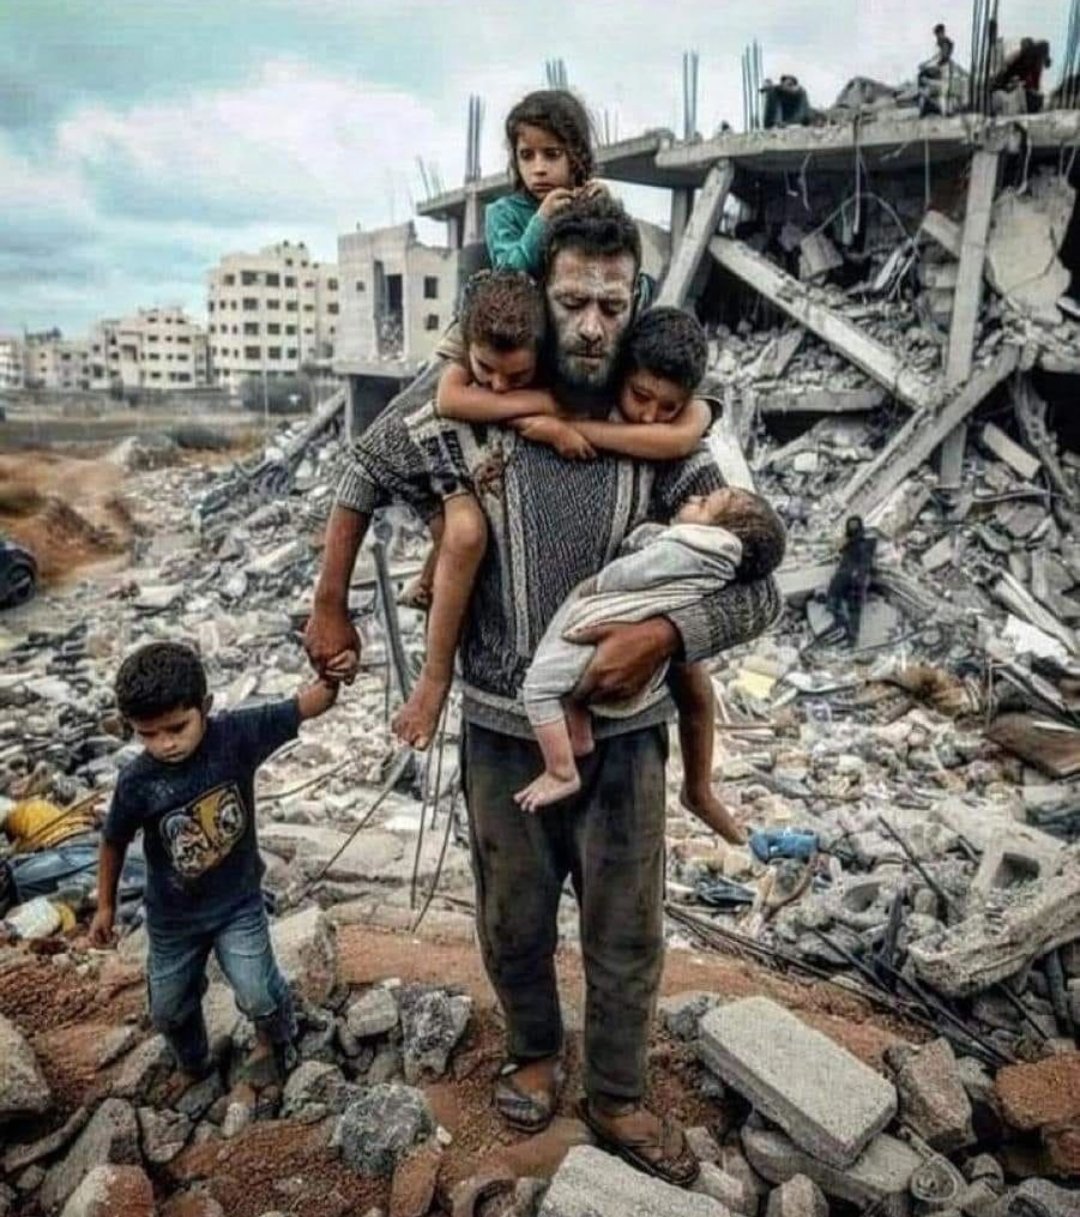 팔레스타인 가자지구 주민이 다섯 아이를 데리고 이스라엘군 공습으로 무너진 건물 잔해 속을 걸어나오고 있다. 인공지능(AI)에 의해 조작된 사진으로 드러났다. 소셜미디어 ‘X’(옛 트위터) 캡처